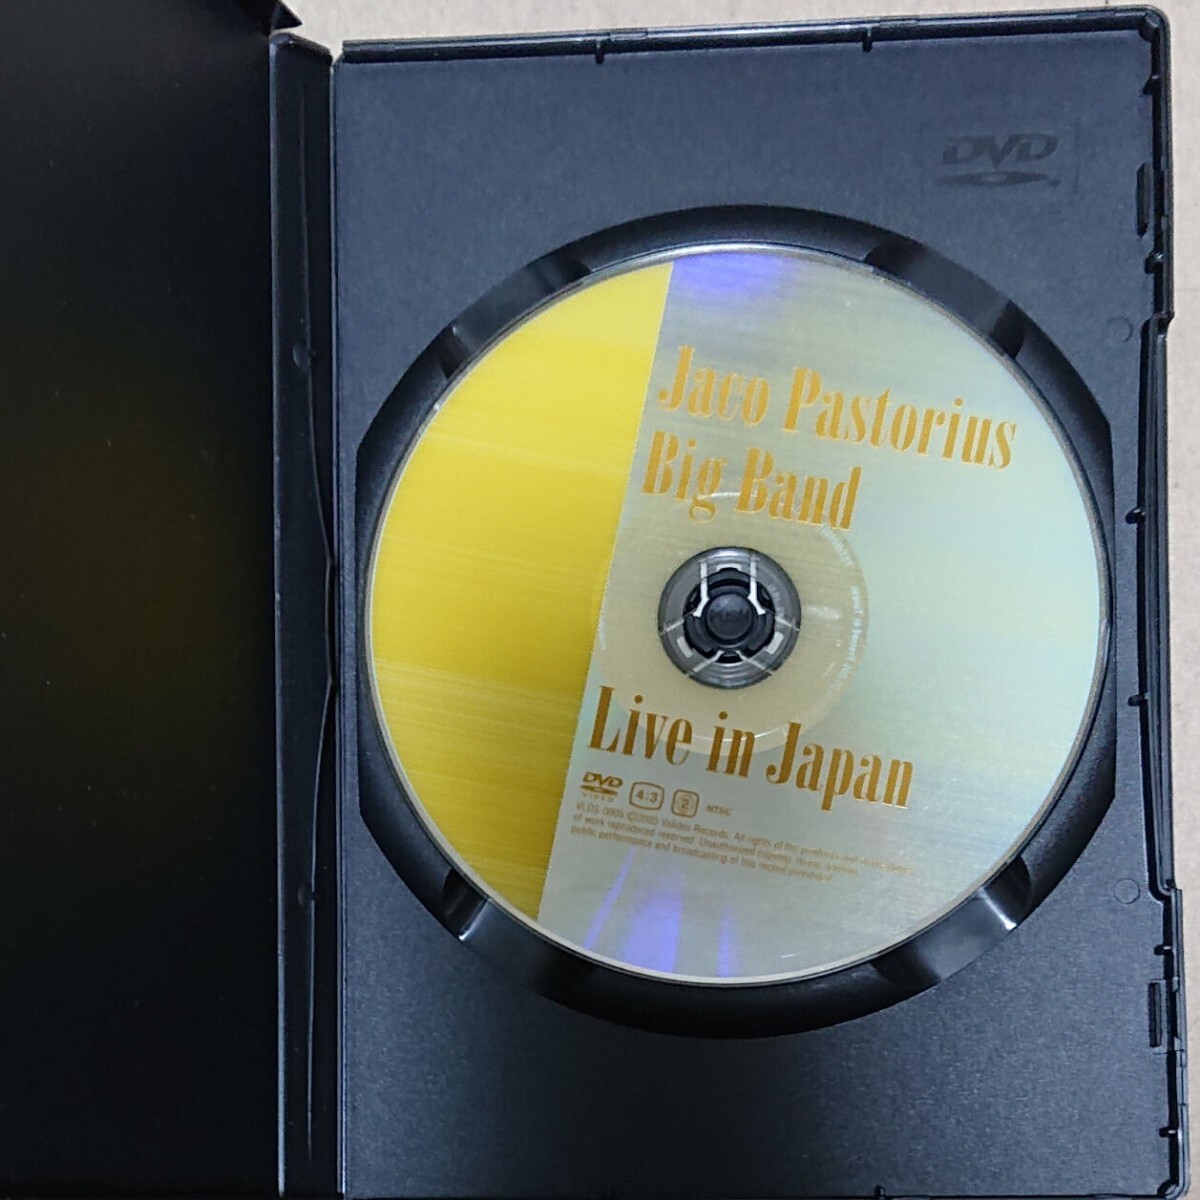 【DVD】ジャコ・パストリアス/ライブ・イン・ジャパン Jaco Pastorius Big Band/Live in Japanの画像3